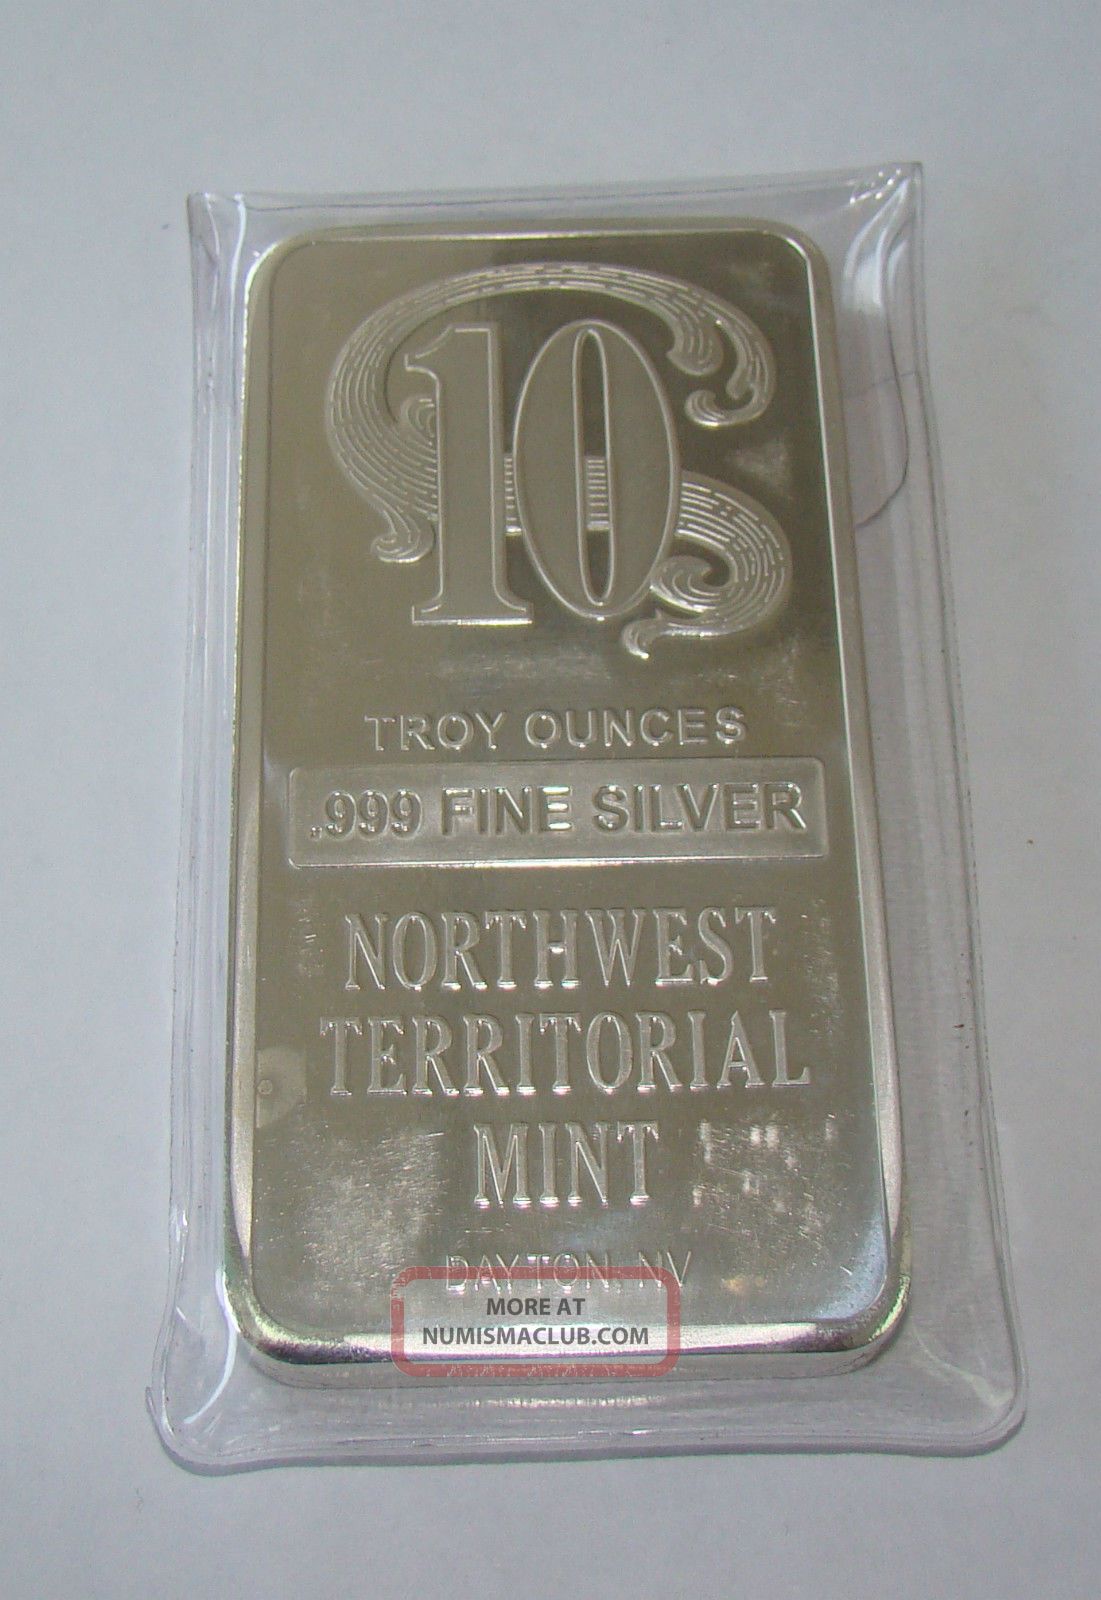 10 Troy Oz Northwest Territorial. 999 Fine Silver Bar